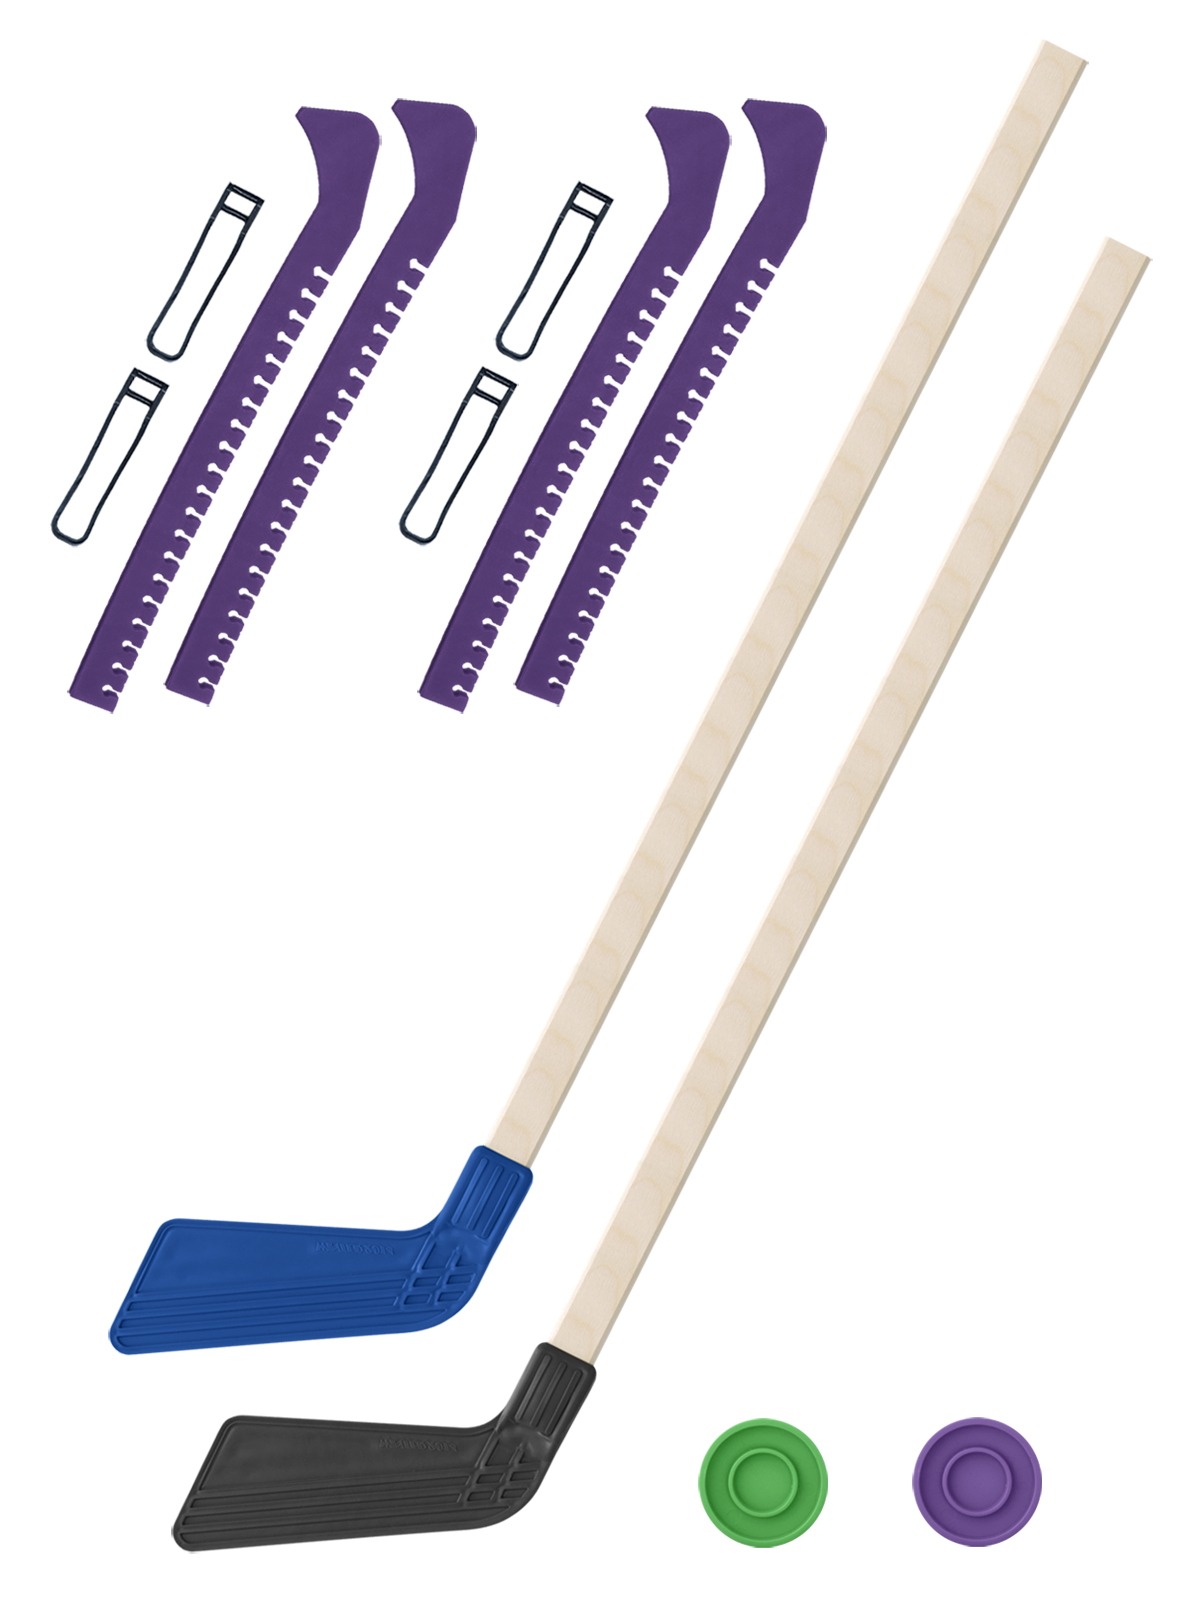 Хоккейный набор Задира-плюс клюшка детская(син+чер)2шт+2 шайбы+чехлы для коньков фиол 2шт